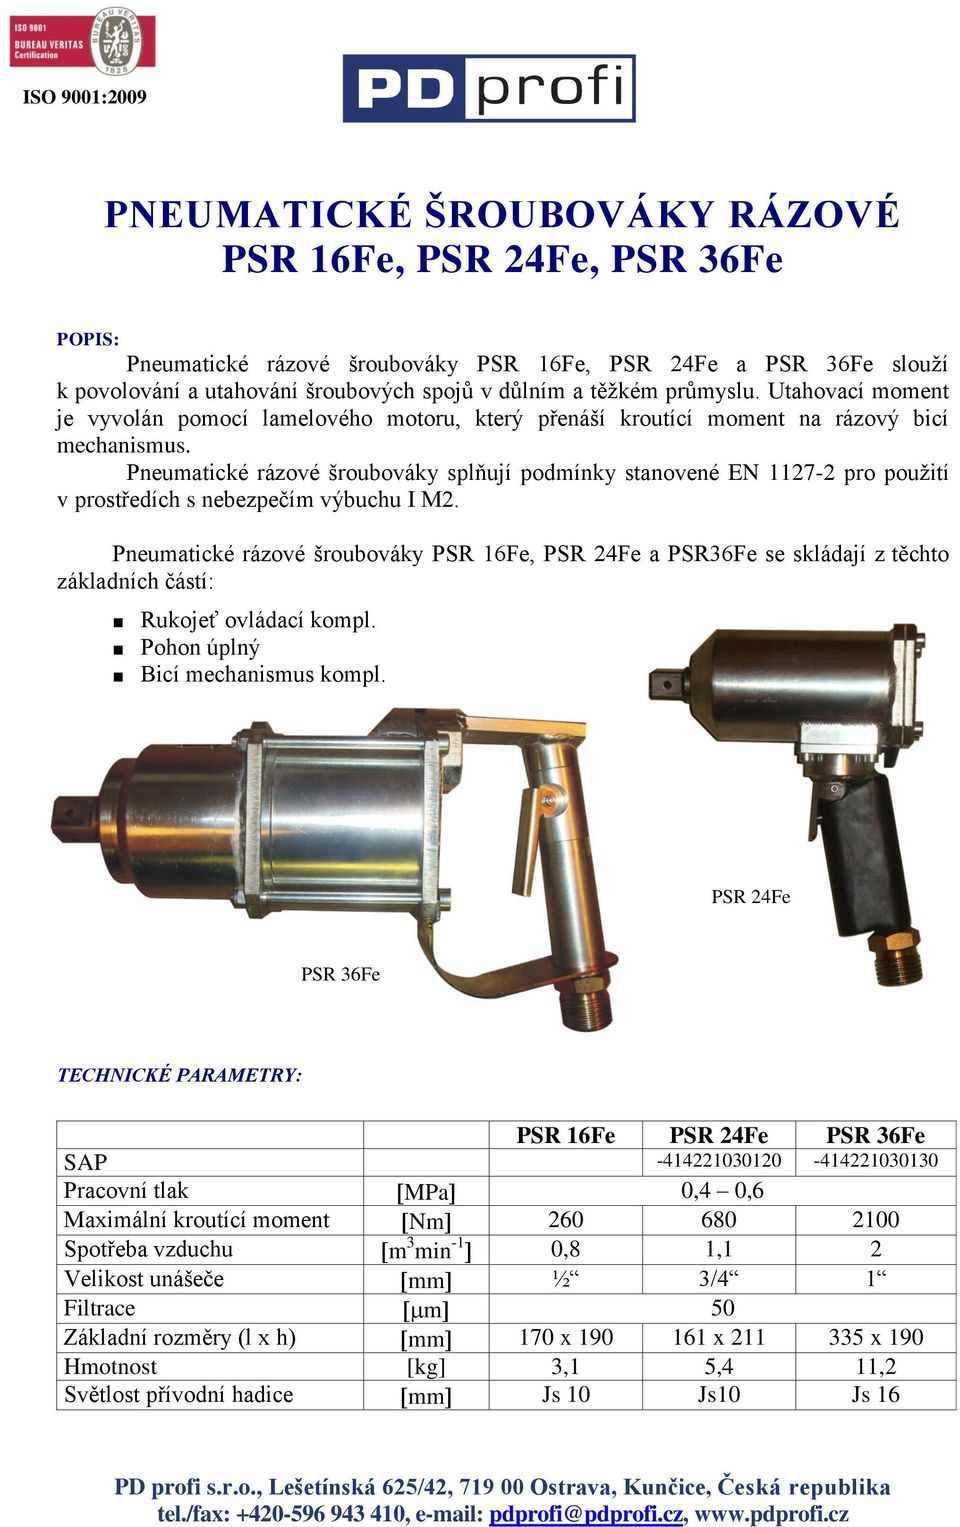 Pneumatické rázové šroubováky splňují podmínky stanovené EN 1127-2 pro použití v prostředích s nebezpečím výbuchu I M2.